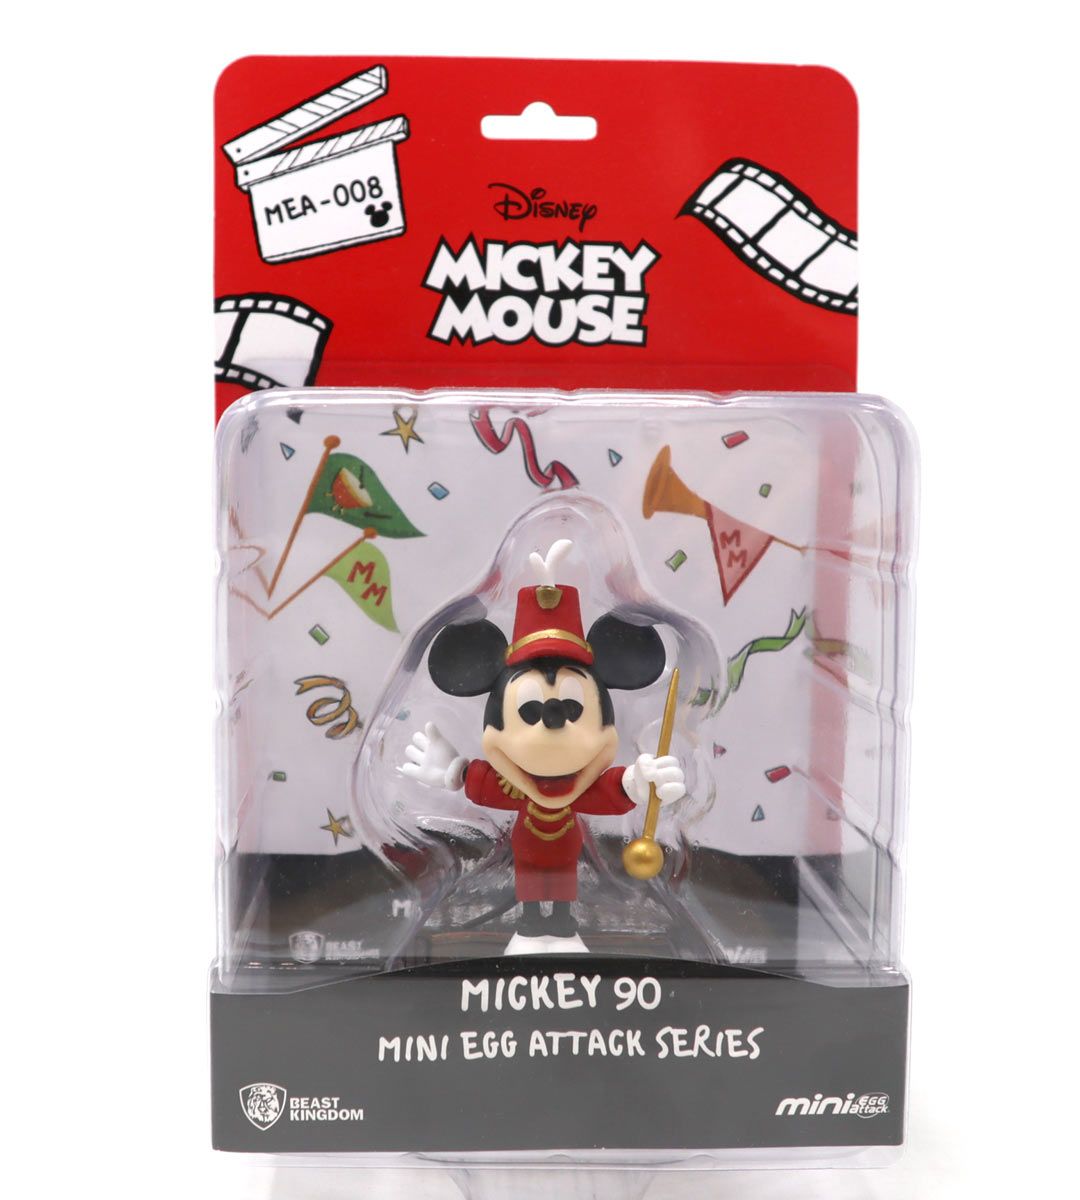 Serie de ataque de mini huevo - Circus Mickey (Mickey Mouse)